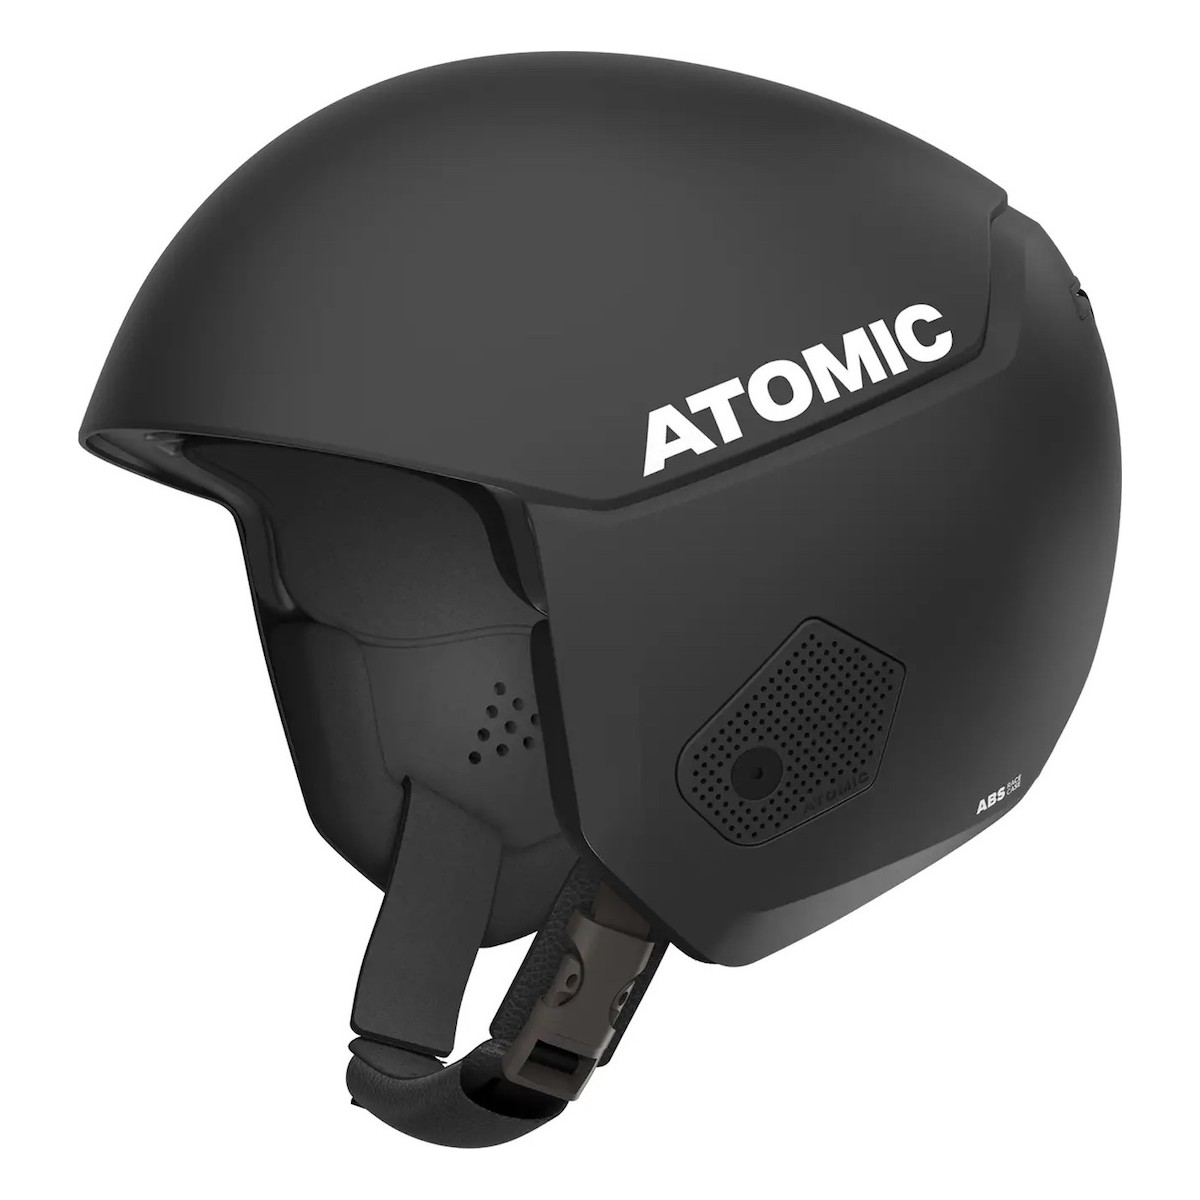 ATOMIC REDSTER JR helmet - black